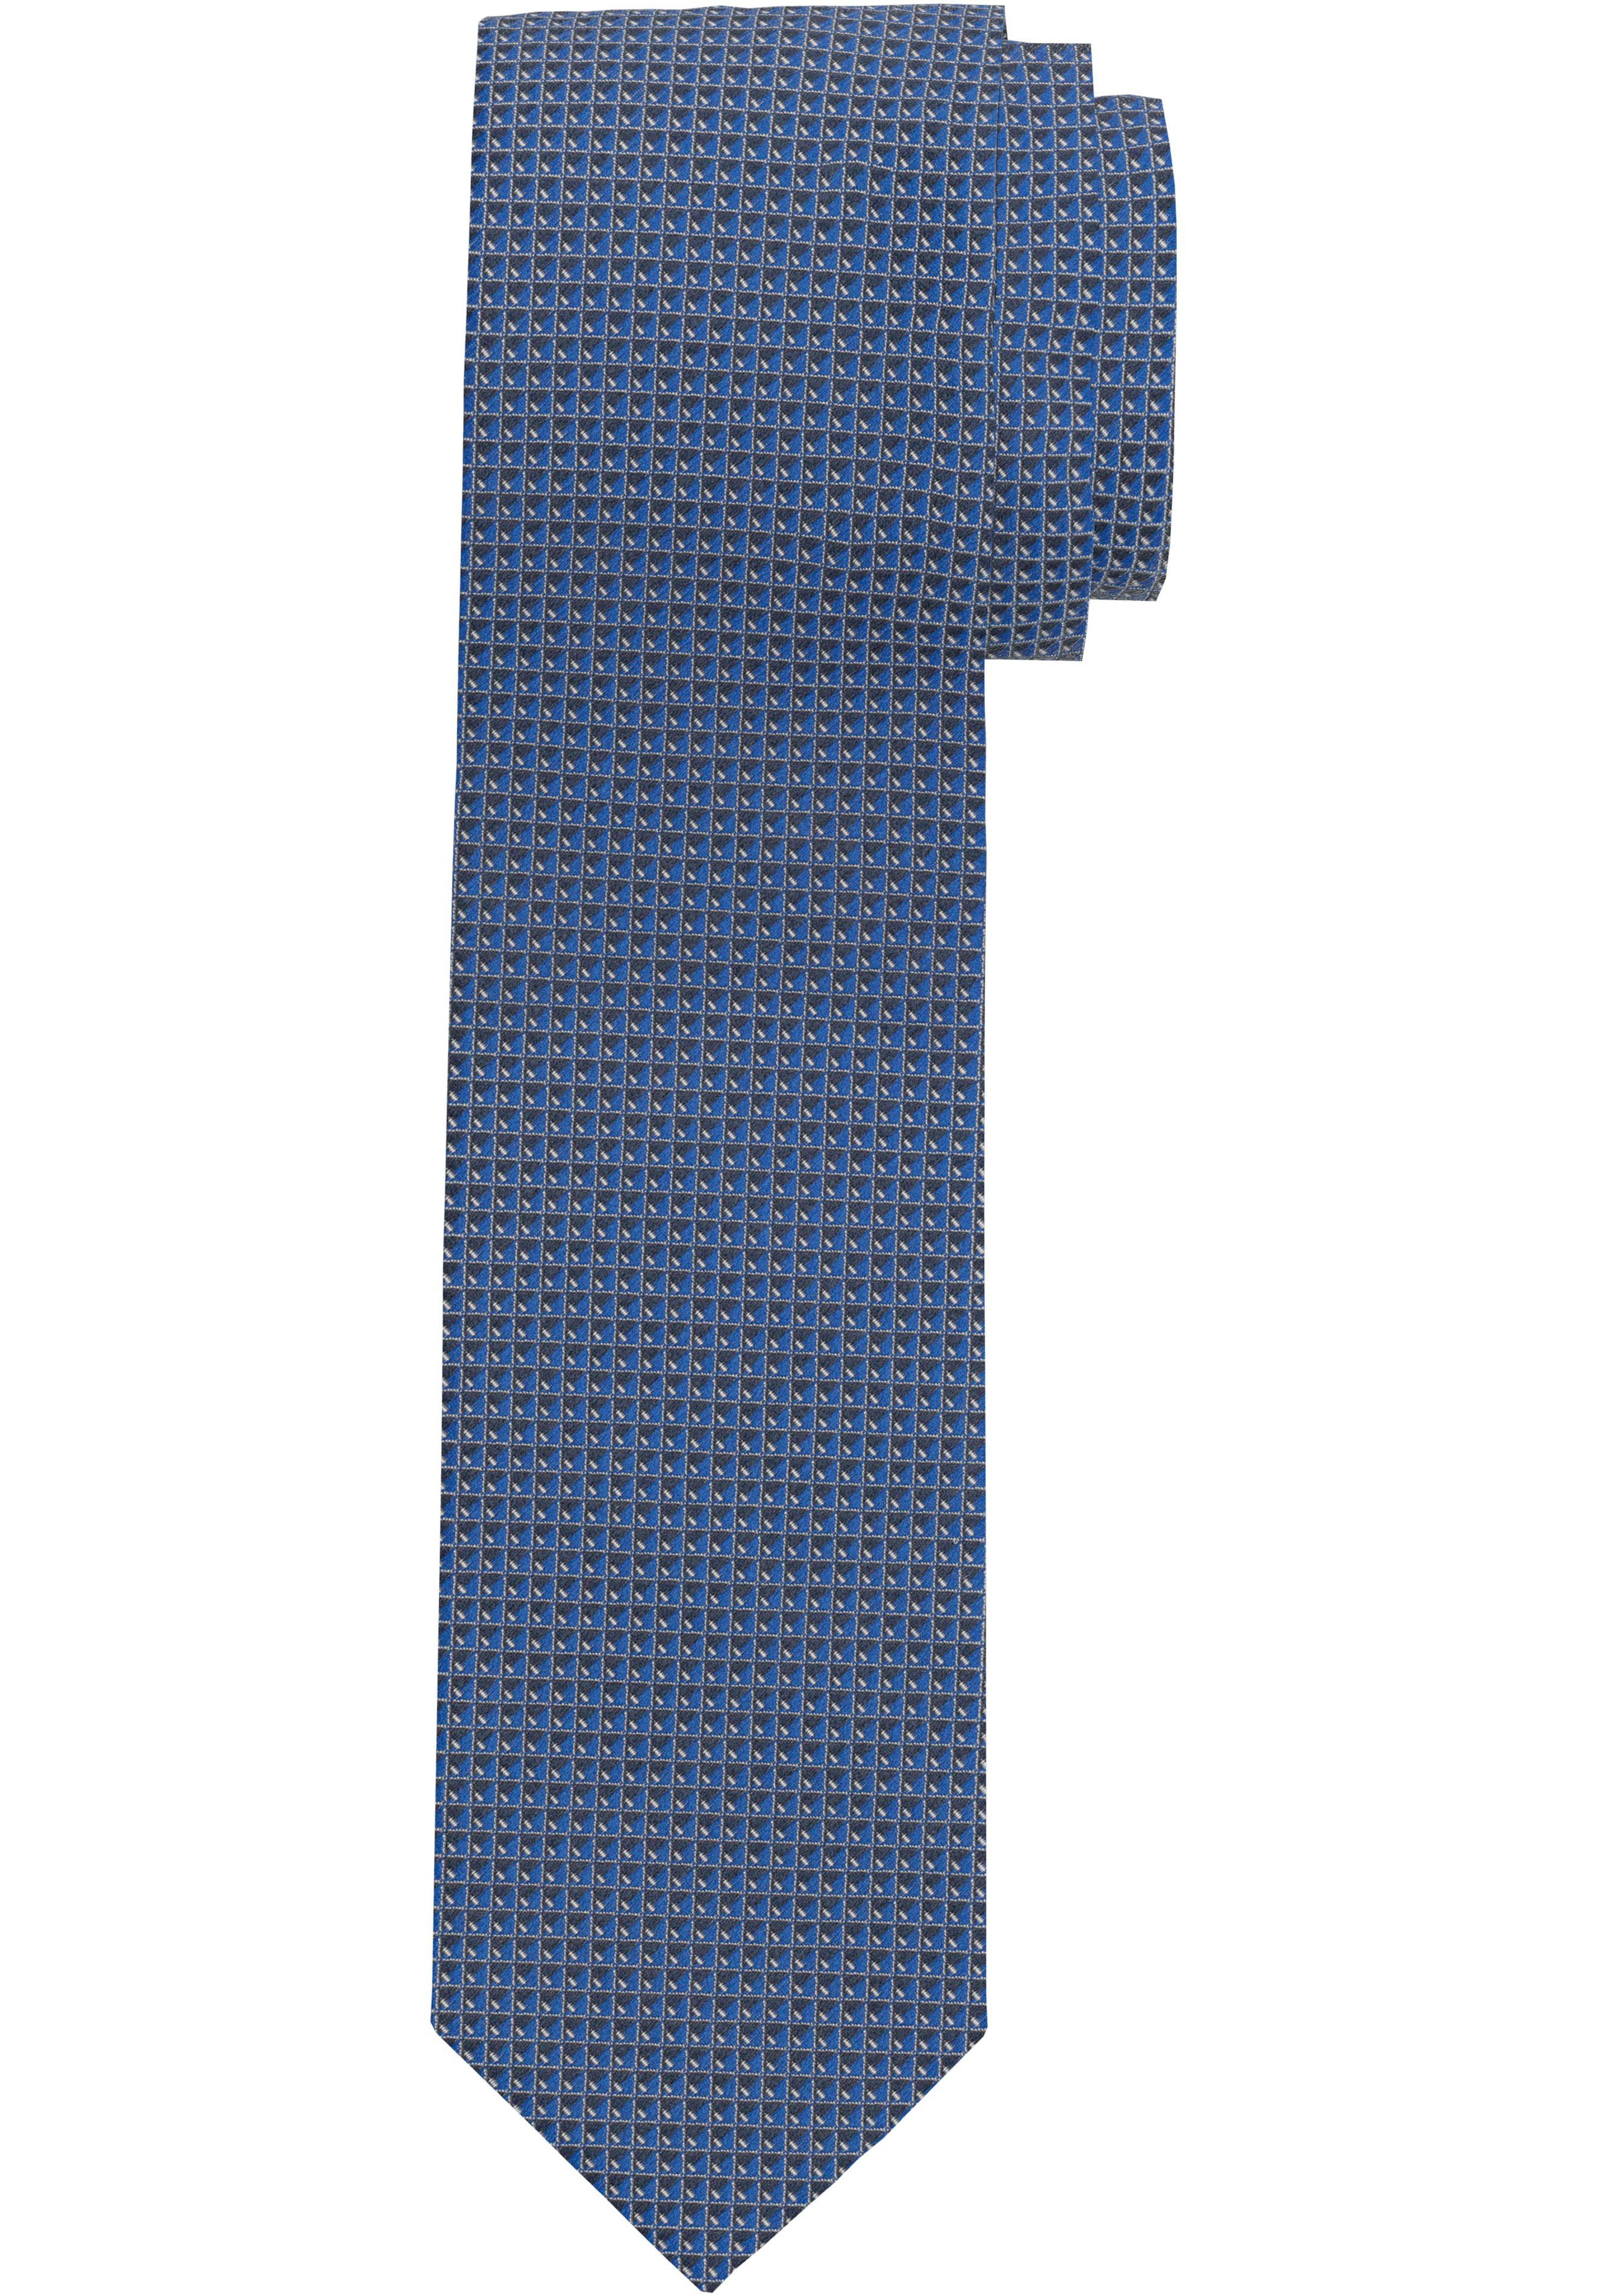 OLYMP Krawatte marine Strukturierte Krawatte